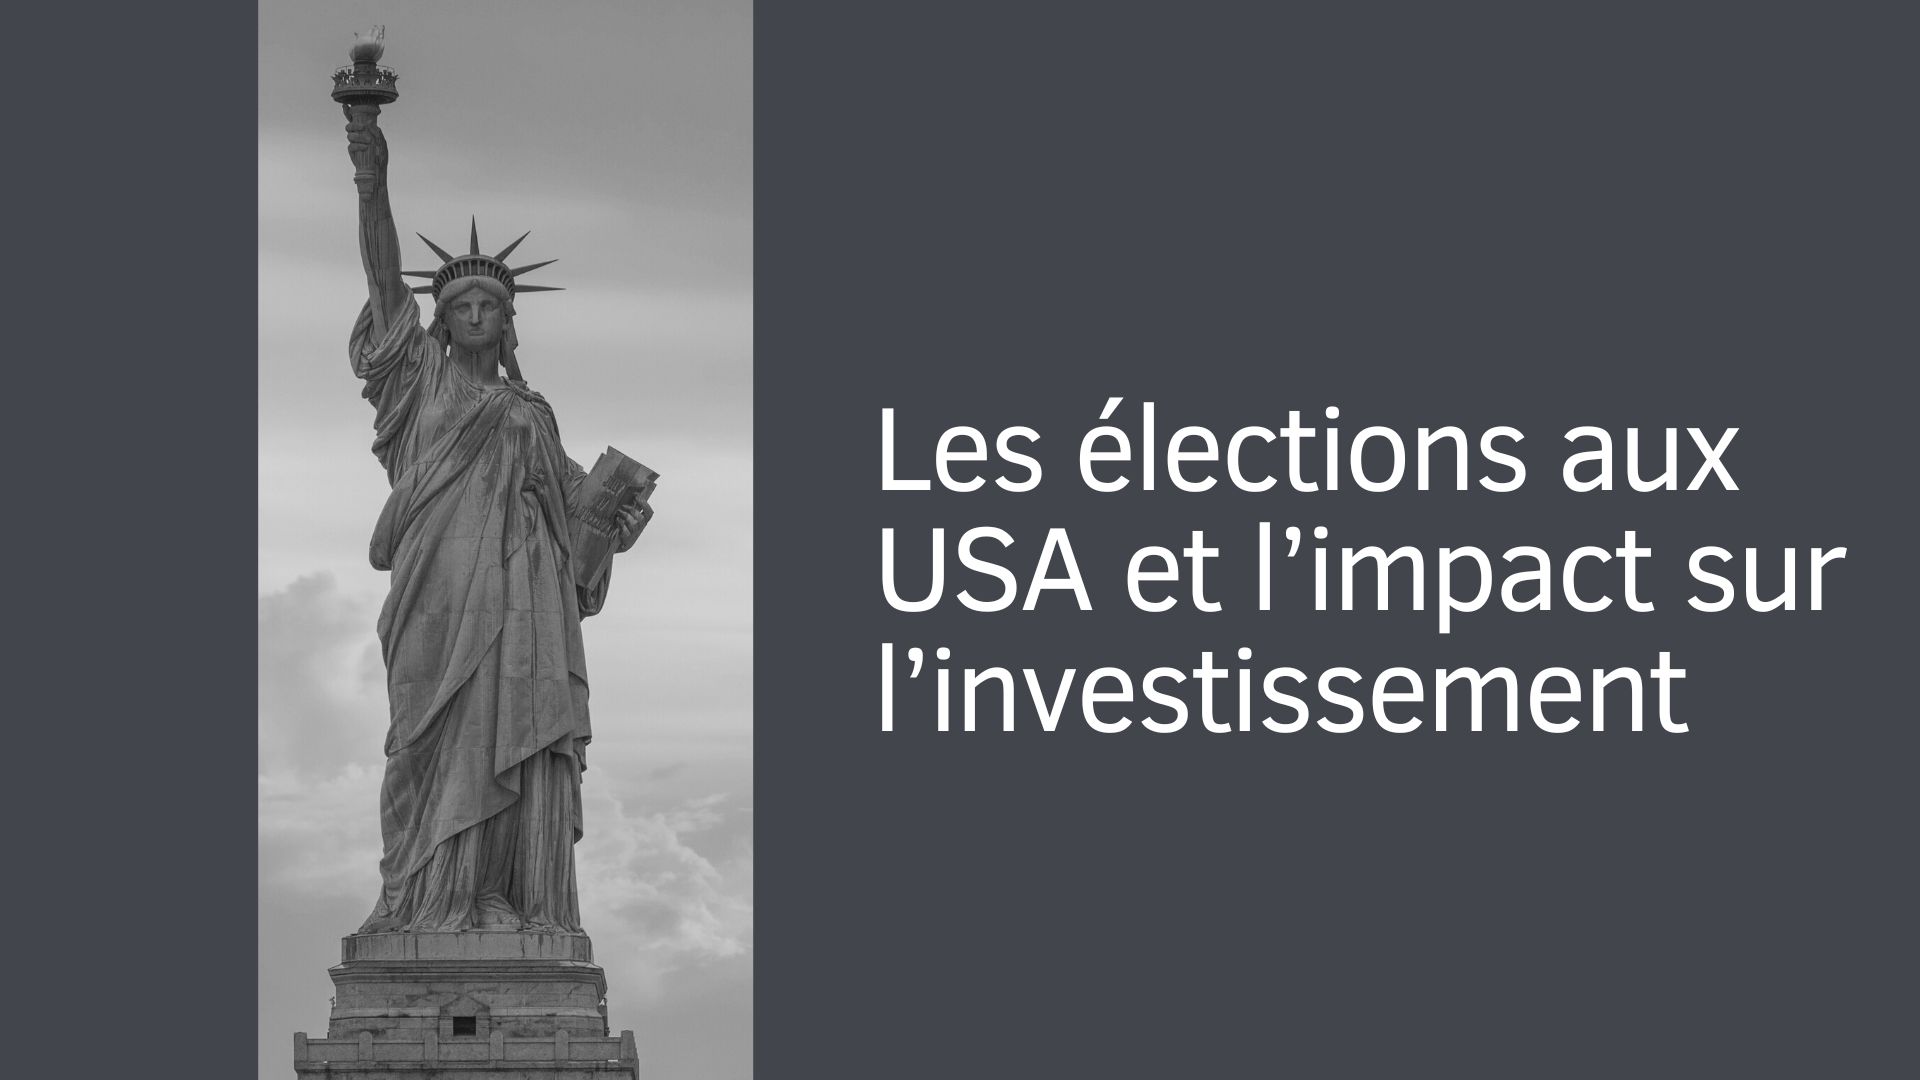 Les élections aux USA et l’impact sur l’investissement